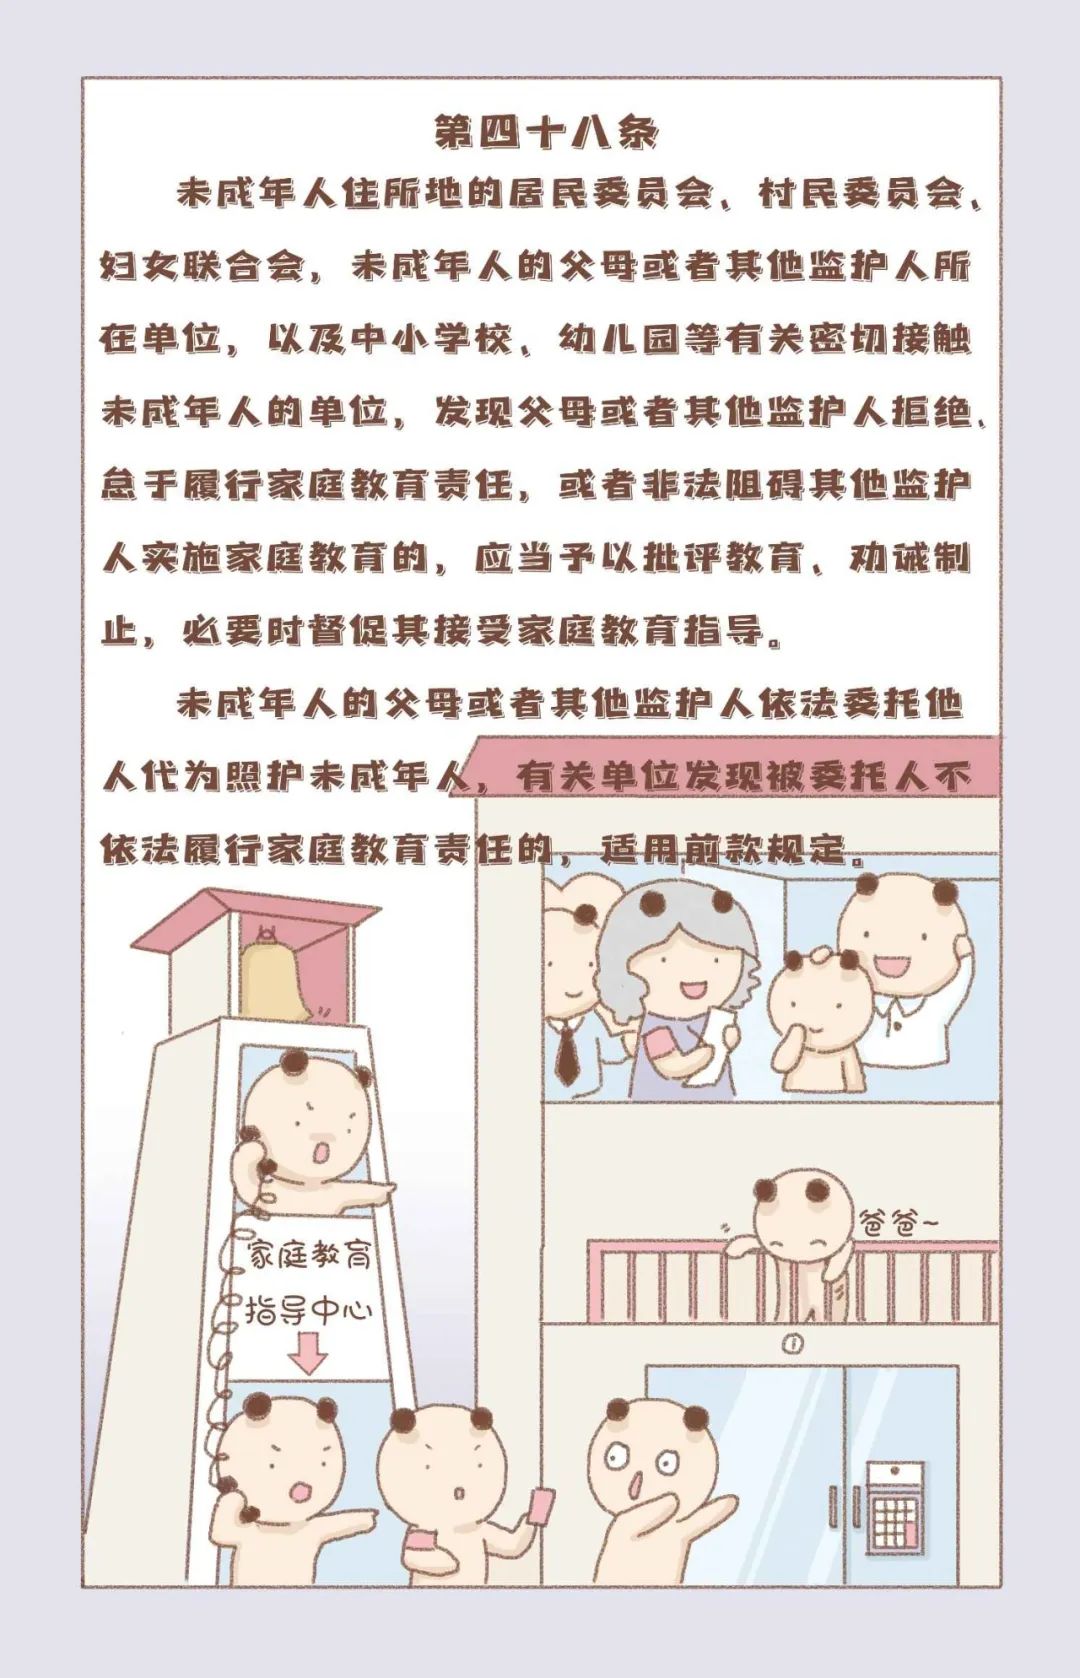 普法漫画第六弹“法律责任篇”—《中华人民共和国家庭教育促进法》